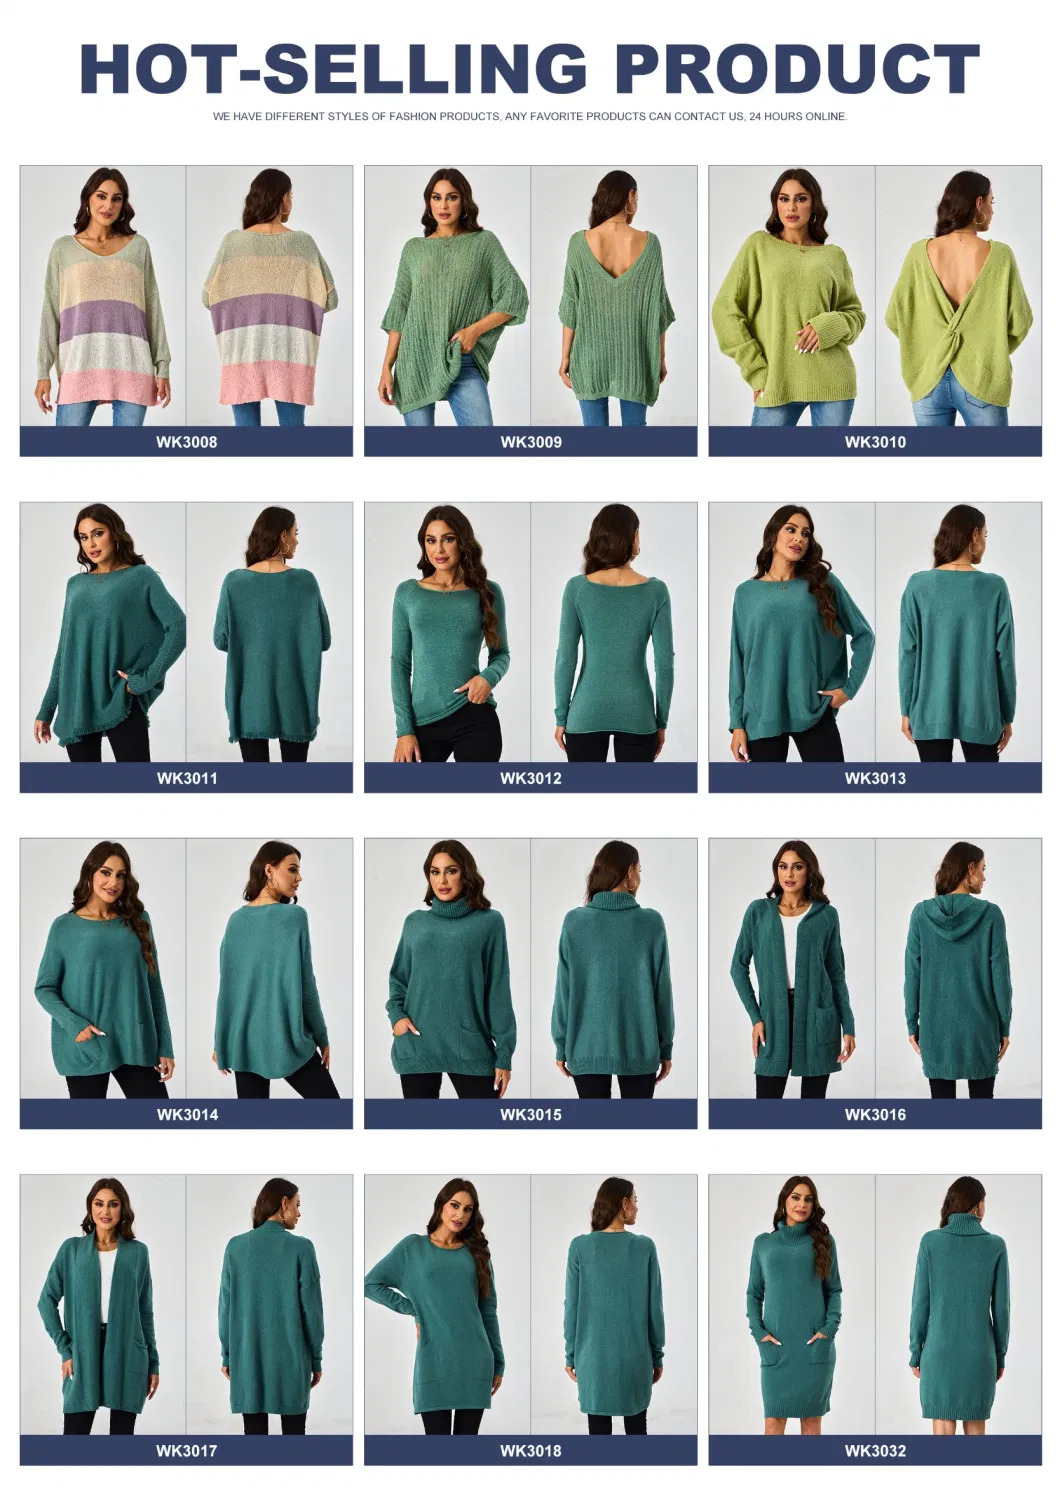 Winter Round Neck Stripe Color Blocking Twist Long Sleeve Striped Sweater Women Knitwear